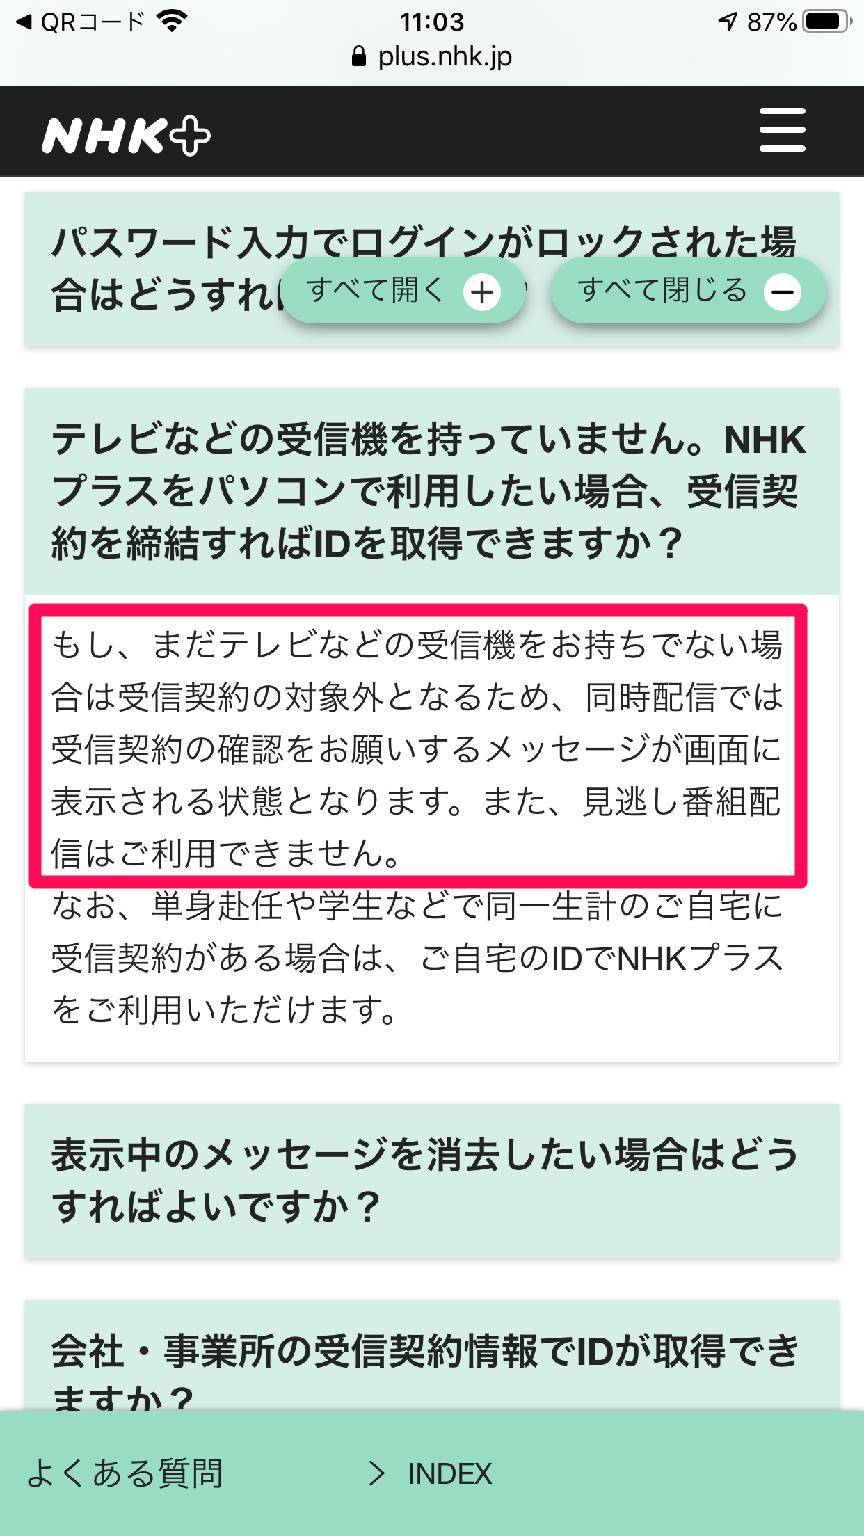 『NHKプラス』公式サイト よくある質問